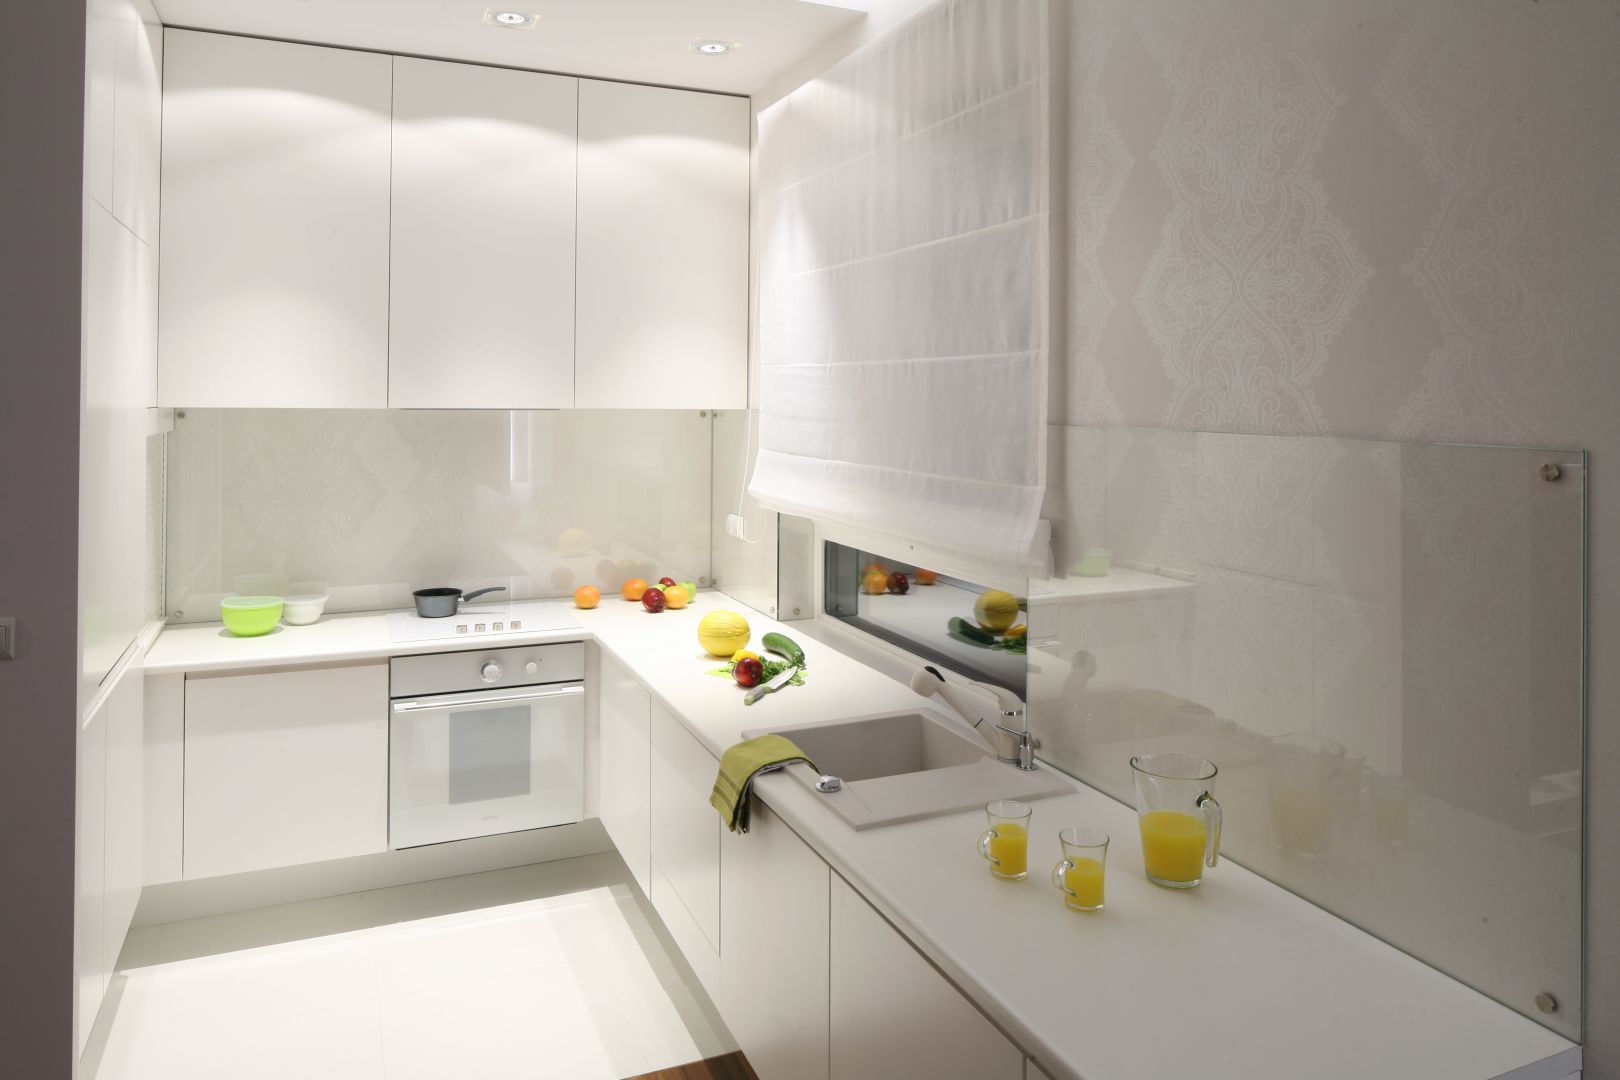 Efektowne podświetlenie szafek w kuchni